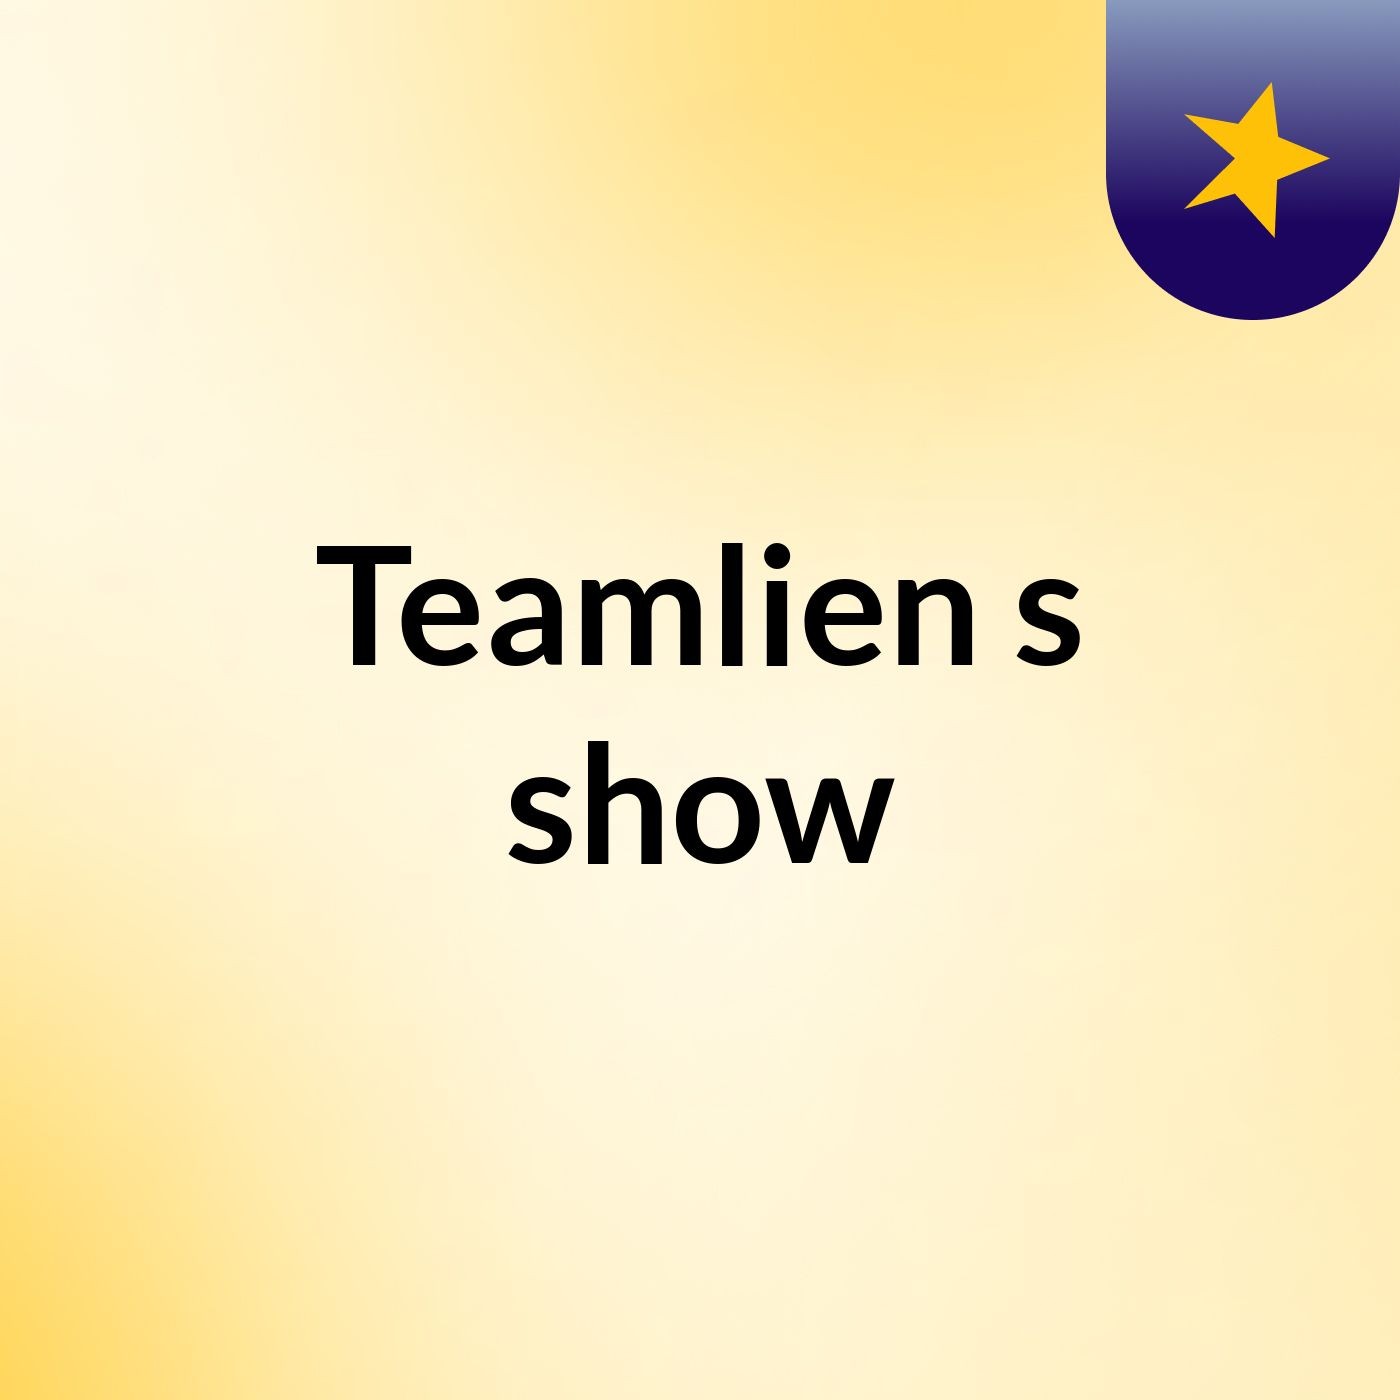 Teamlien's show